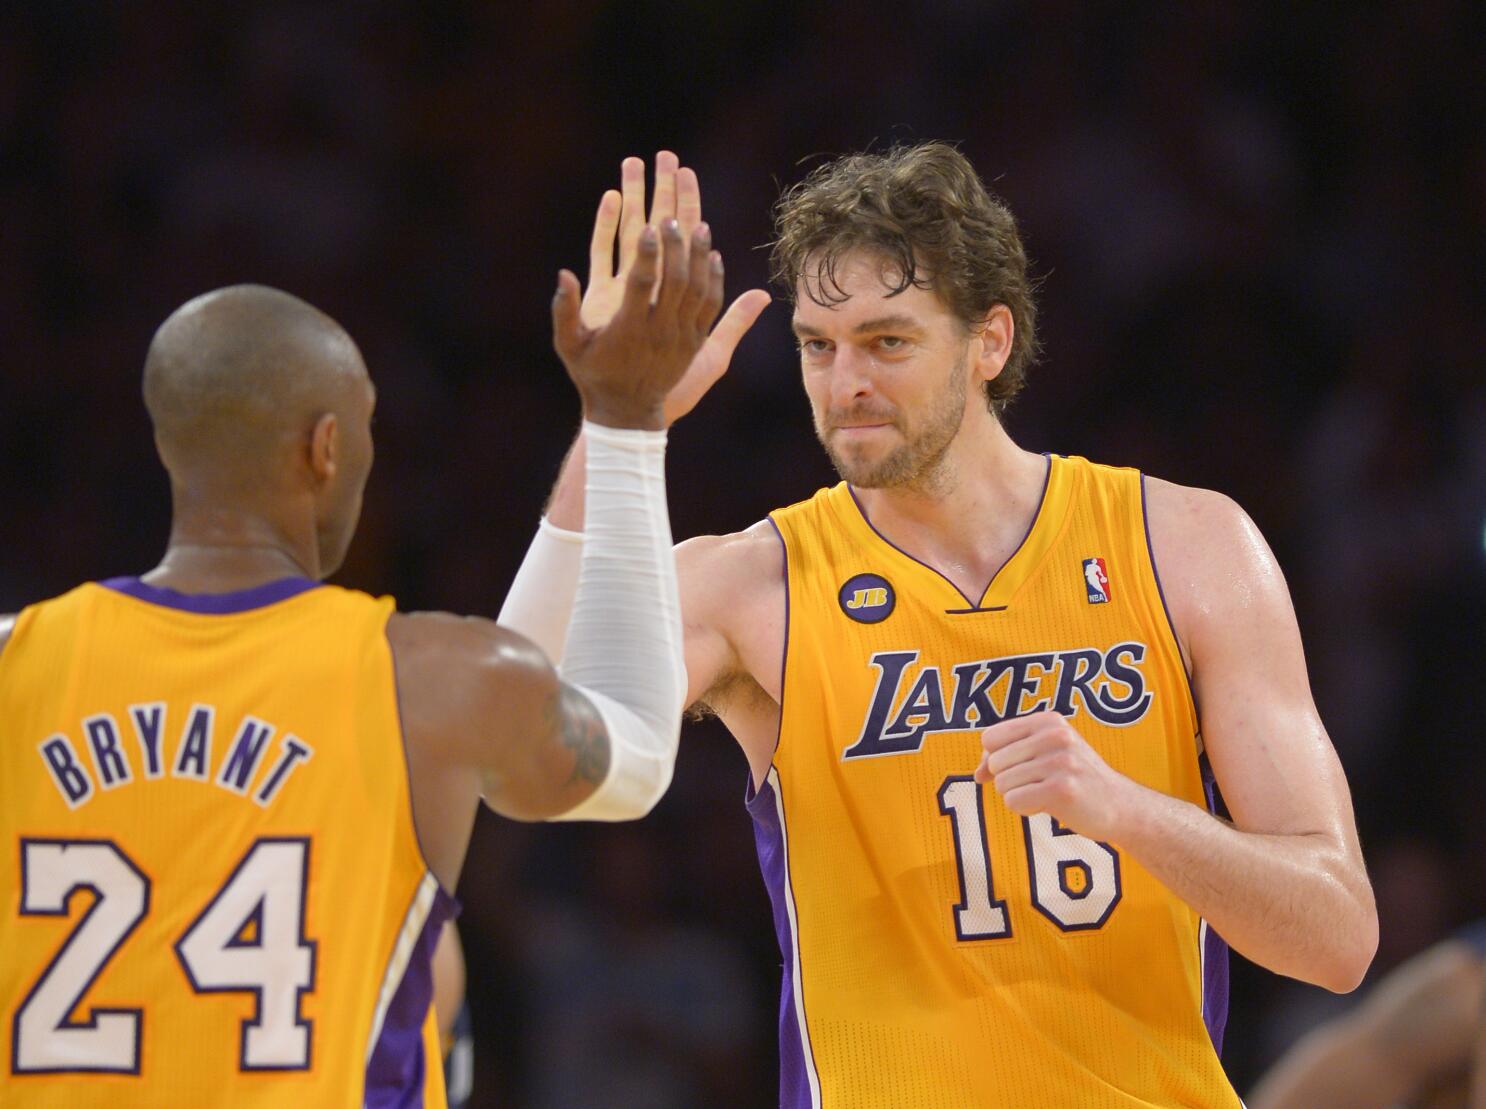 Kobe Bryant LA Lakers jersey 2007-2008 NBA season